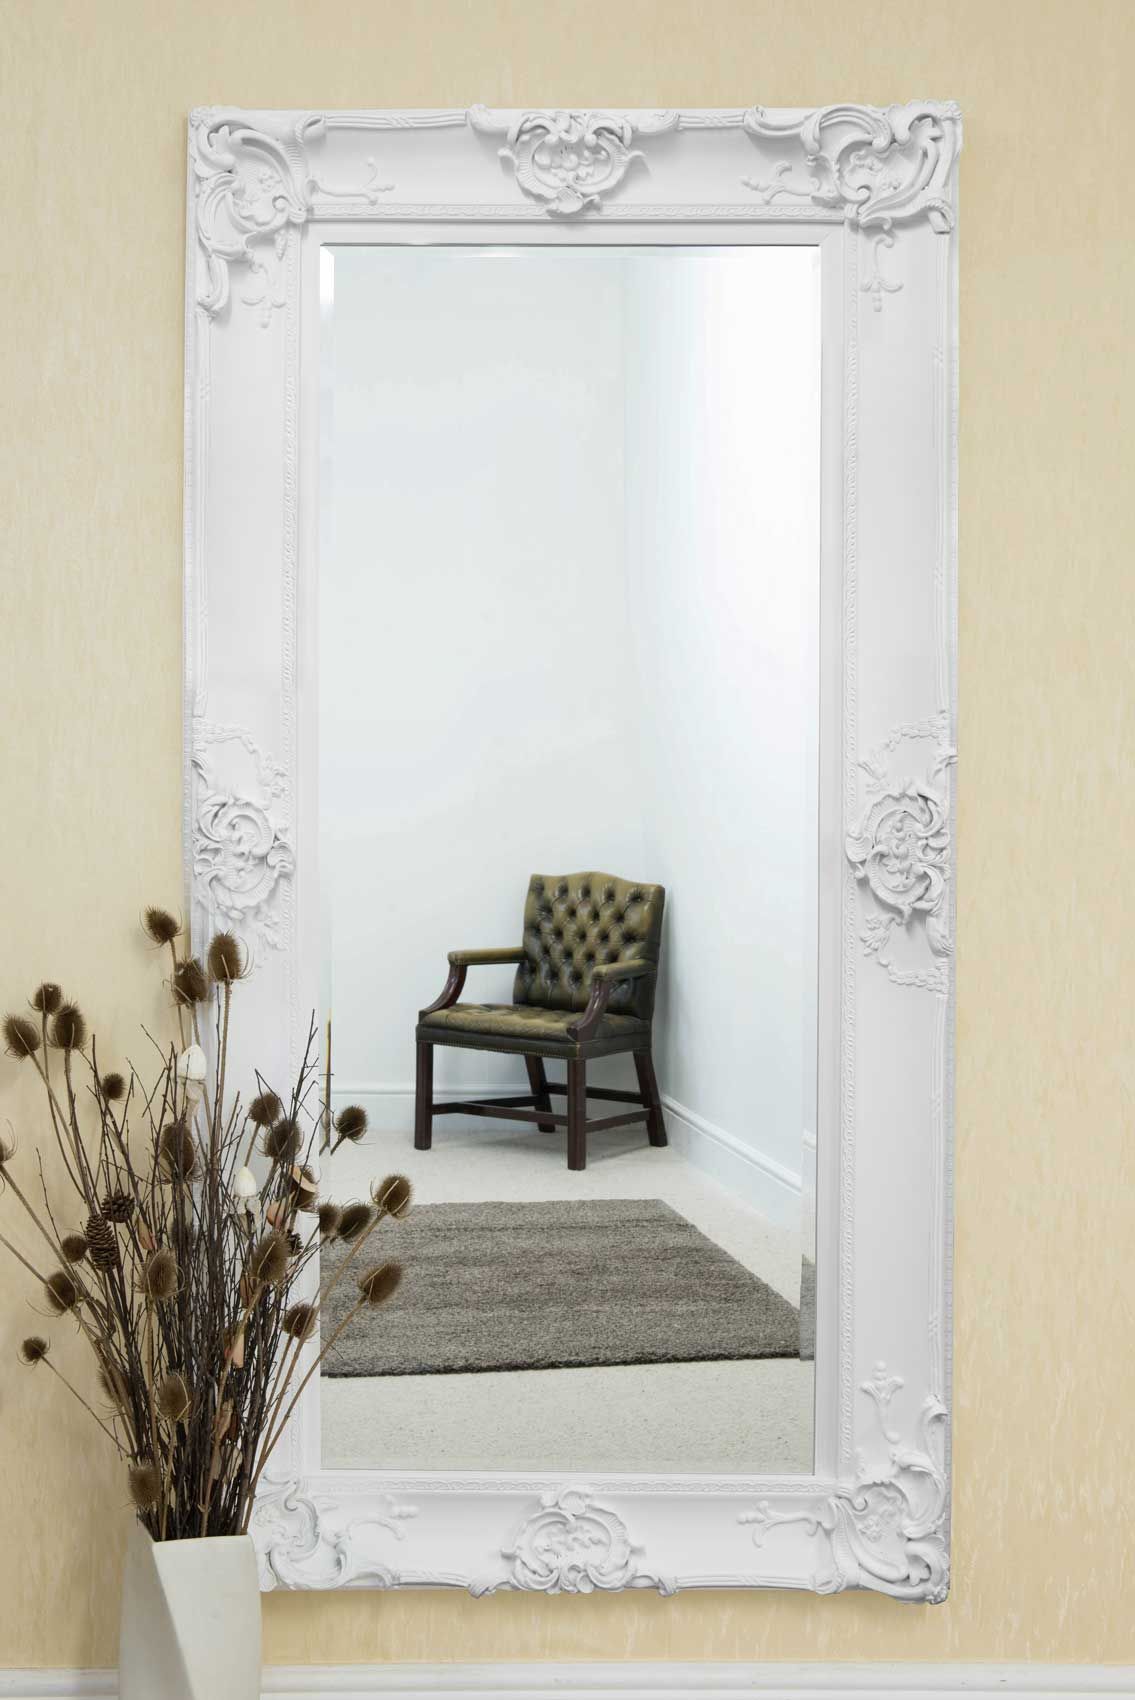 Beautiful Large White Decorative Ornate Wall Mirror 6ft X 3ft 183 X For White Wall Mirrors (View 6 of 15)